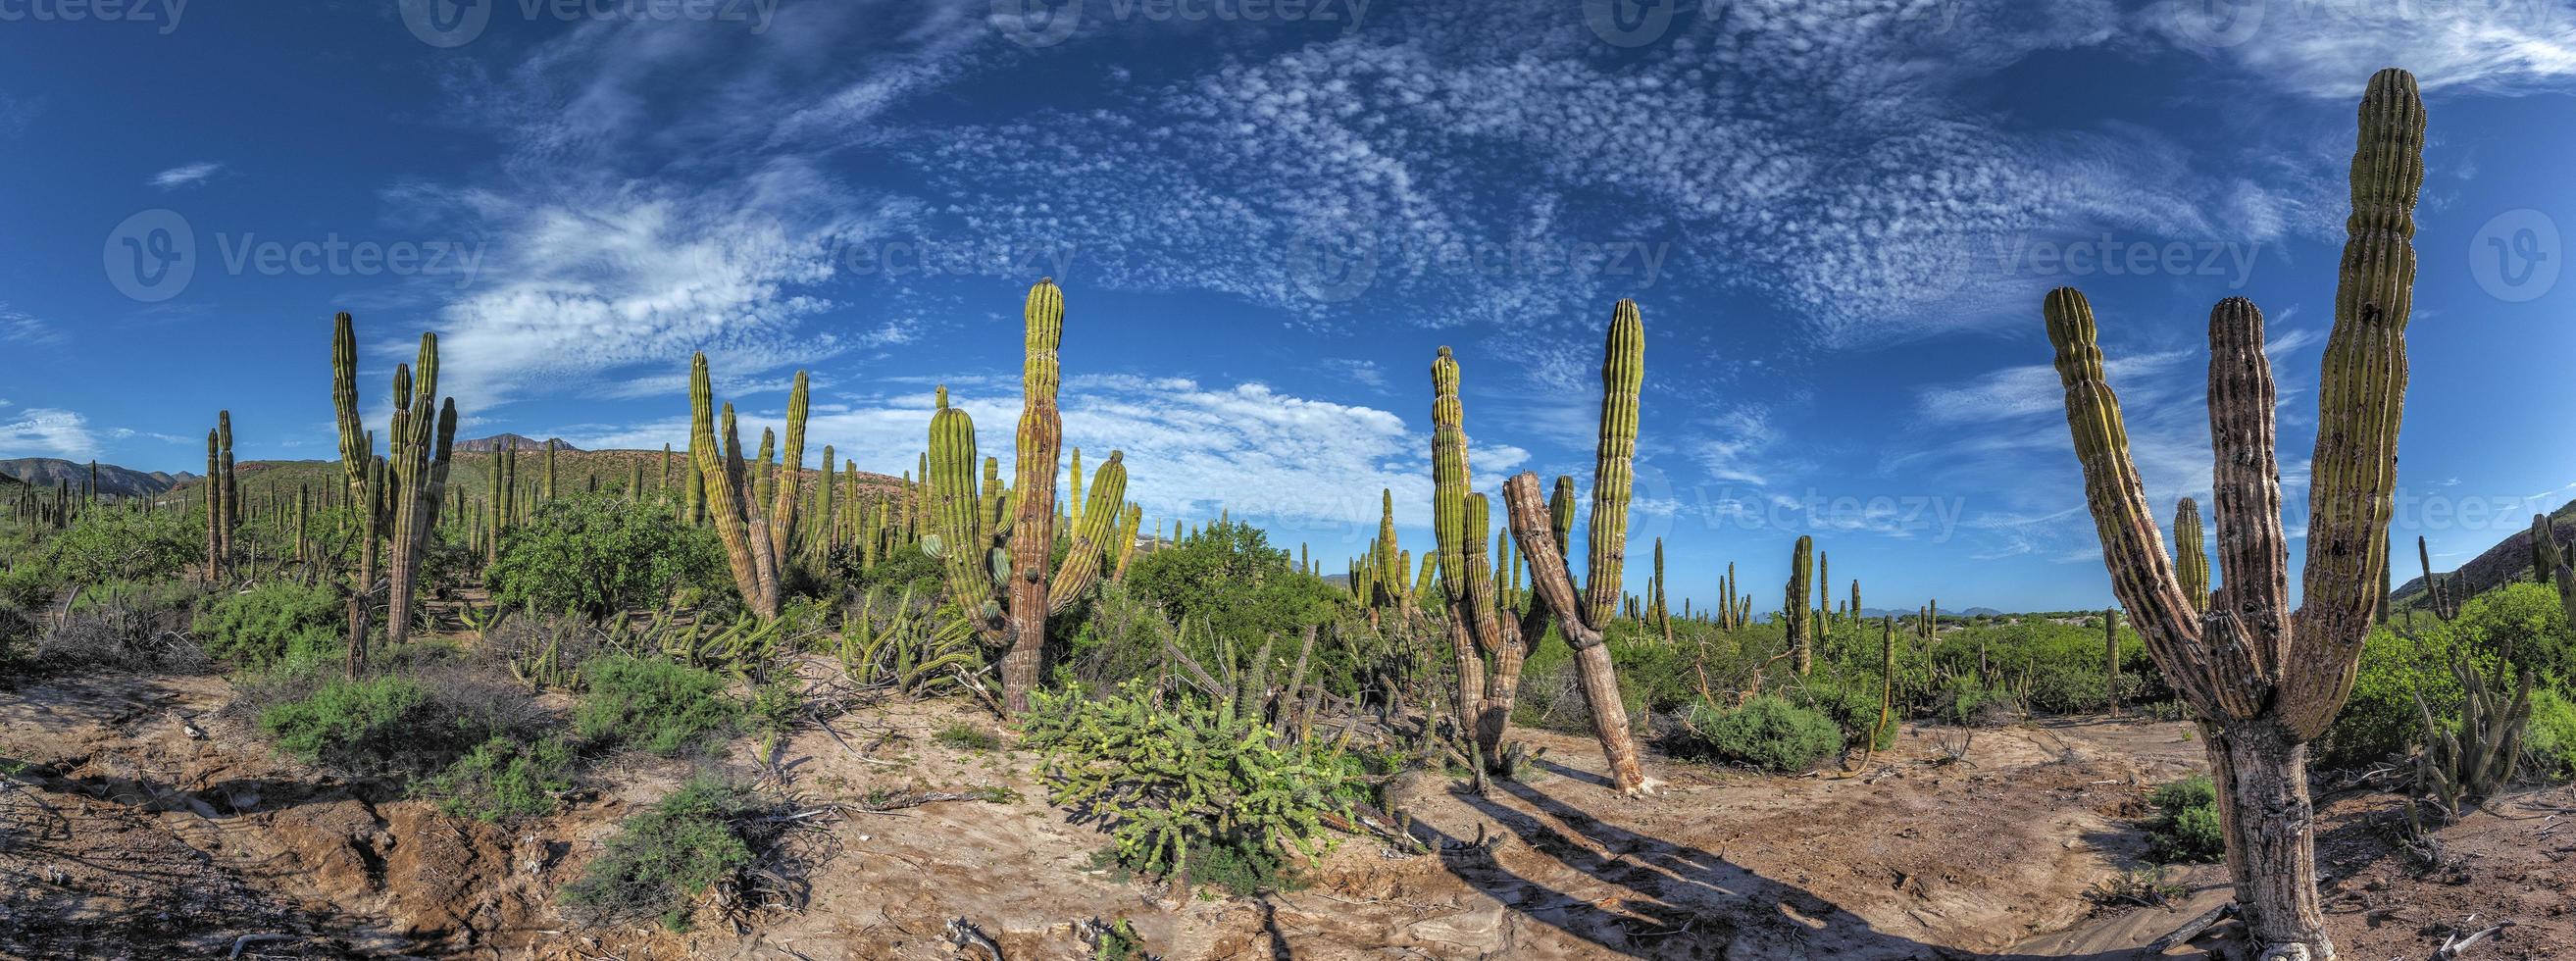 baja Californië sur reusachtig cactus in woestijn foto